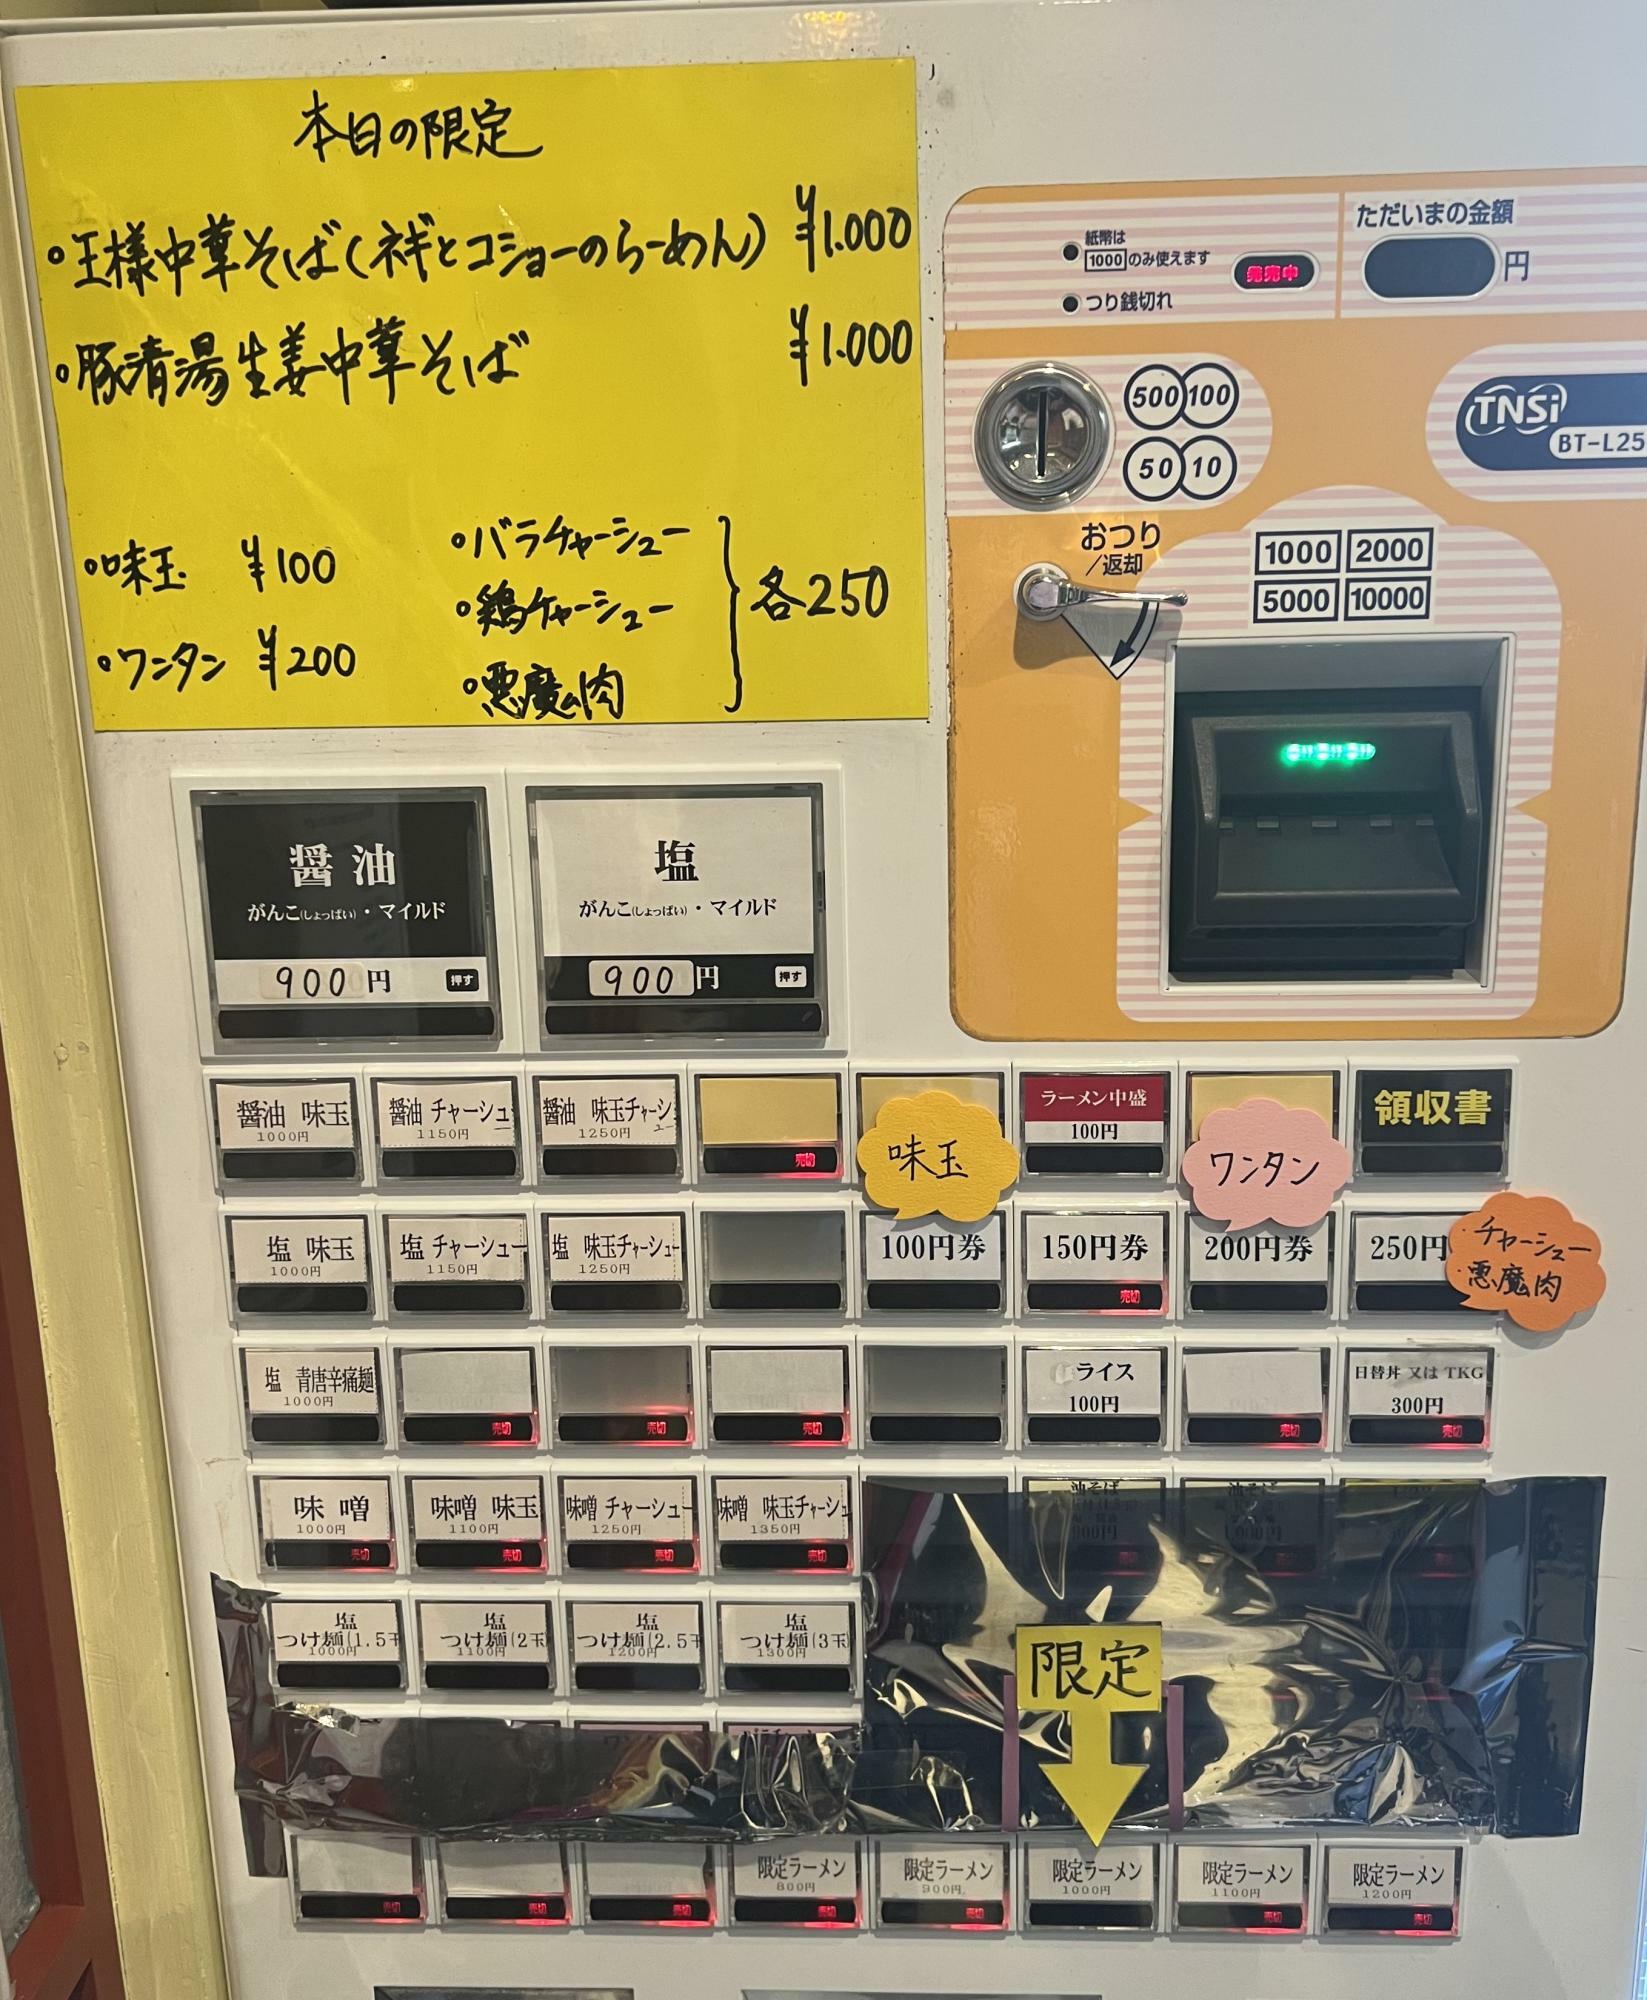 現在は950円に変わっています。